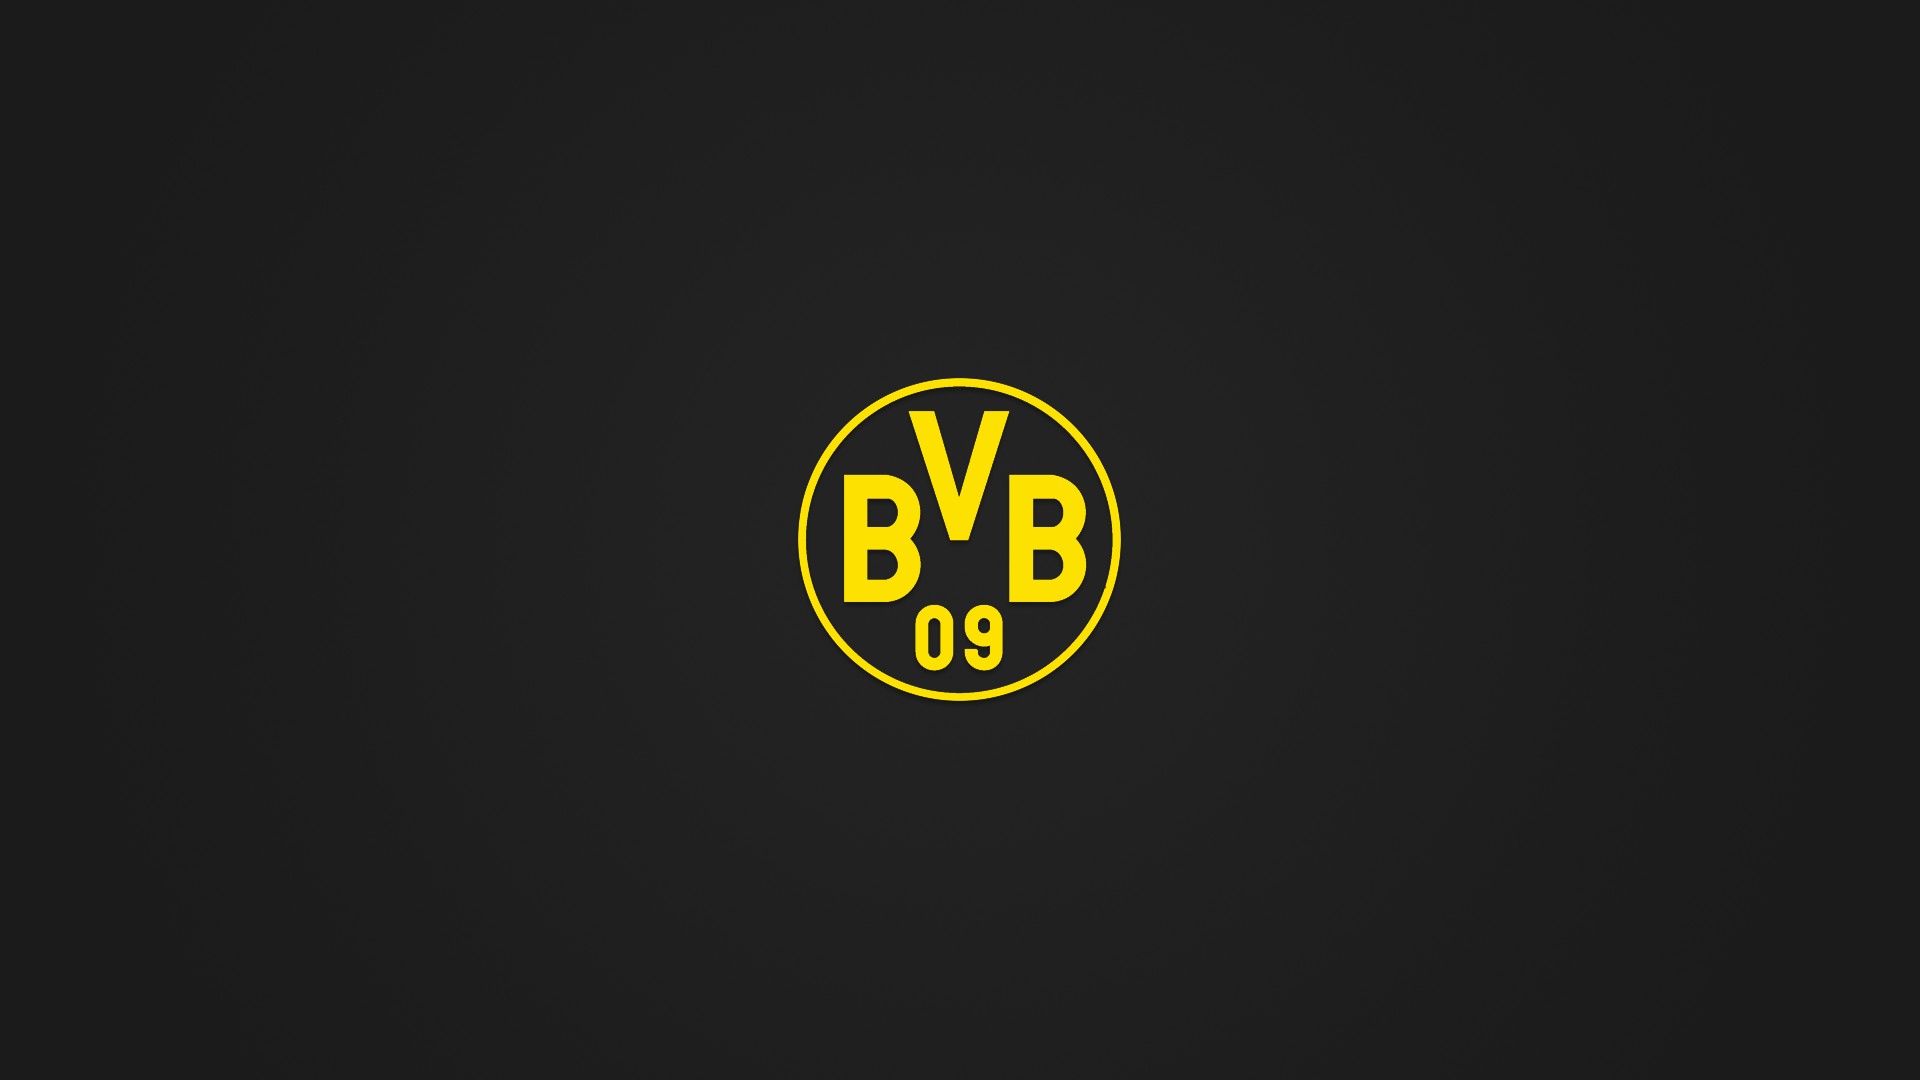 Wallpaper, 1920x1080 px, Borussia Dortmund, BVB, minimalism 1920x1080